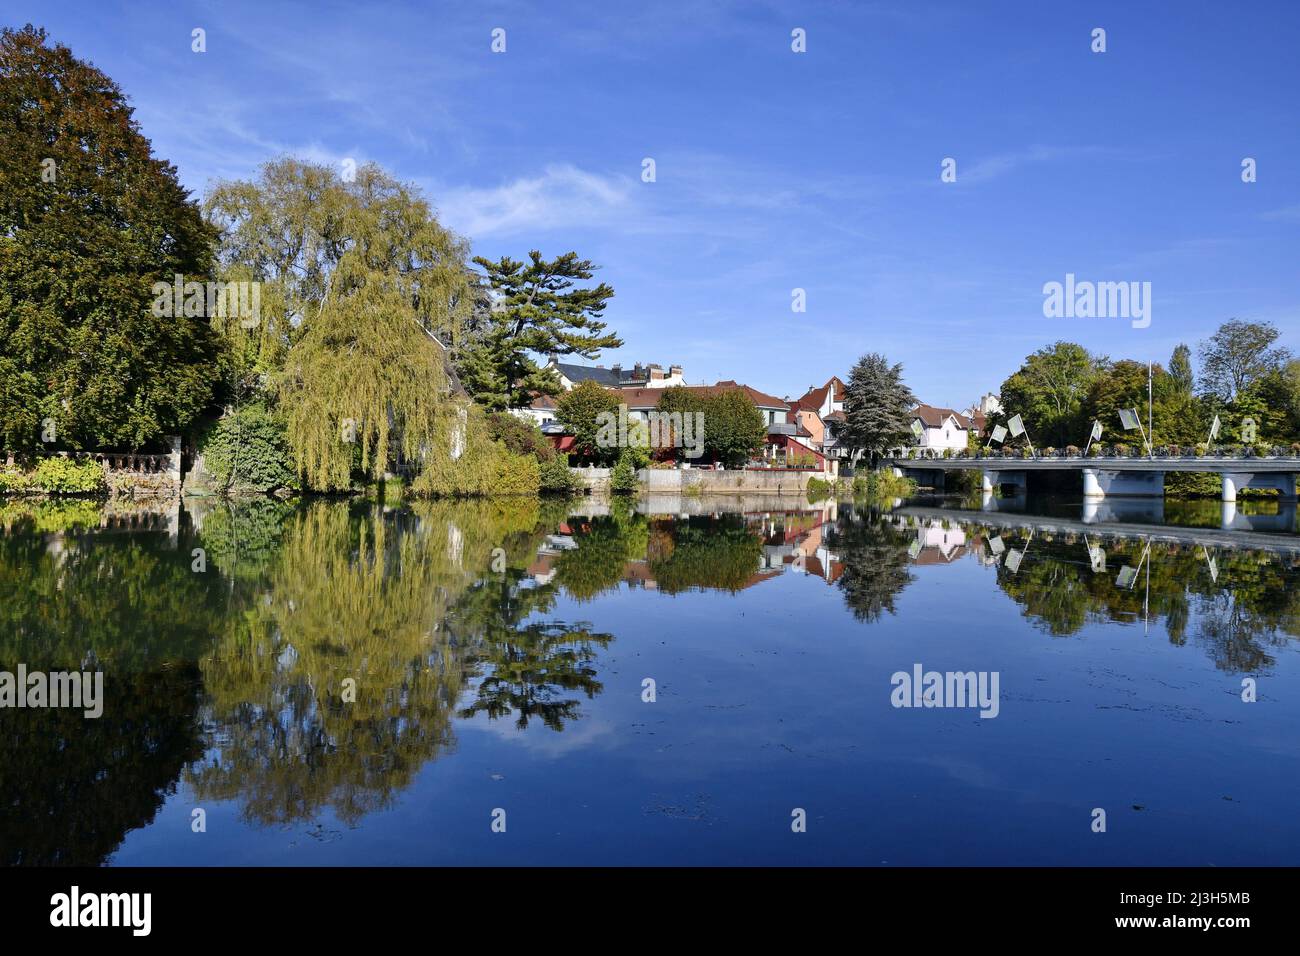 France, Doubs, Montbéliard, city center, river, Allan Stock Photo